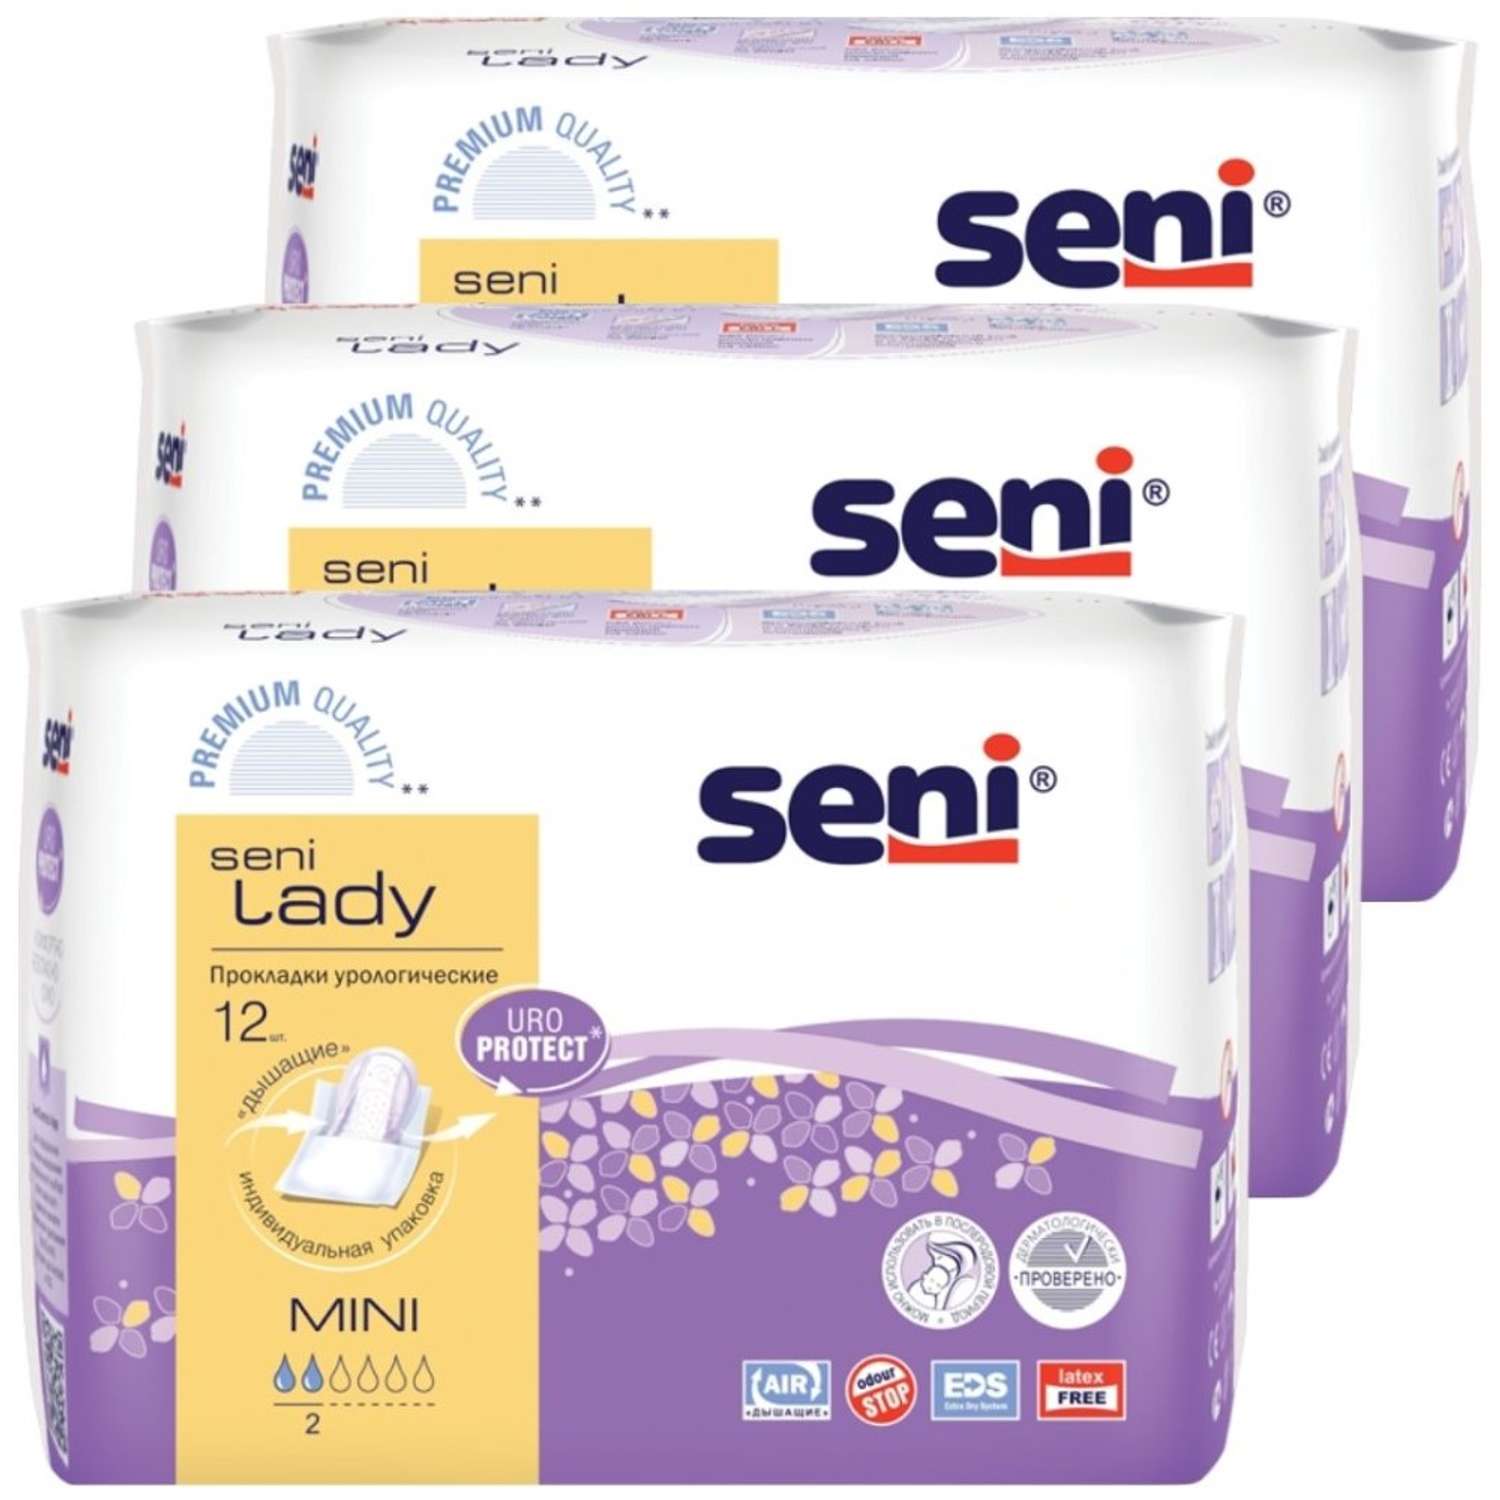 Прокладки урологические SENI Lady mini 3 упаковки по 12 шт - фото 1